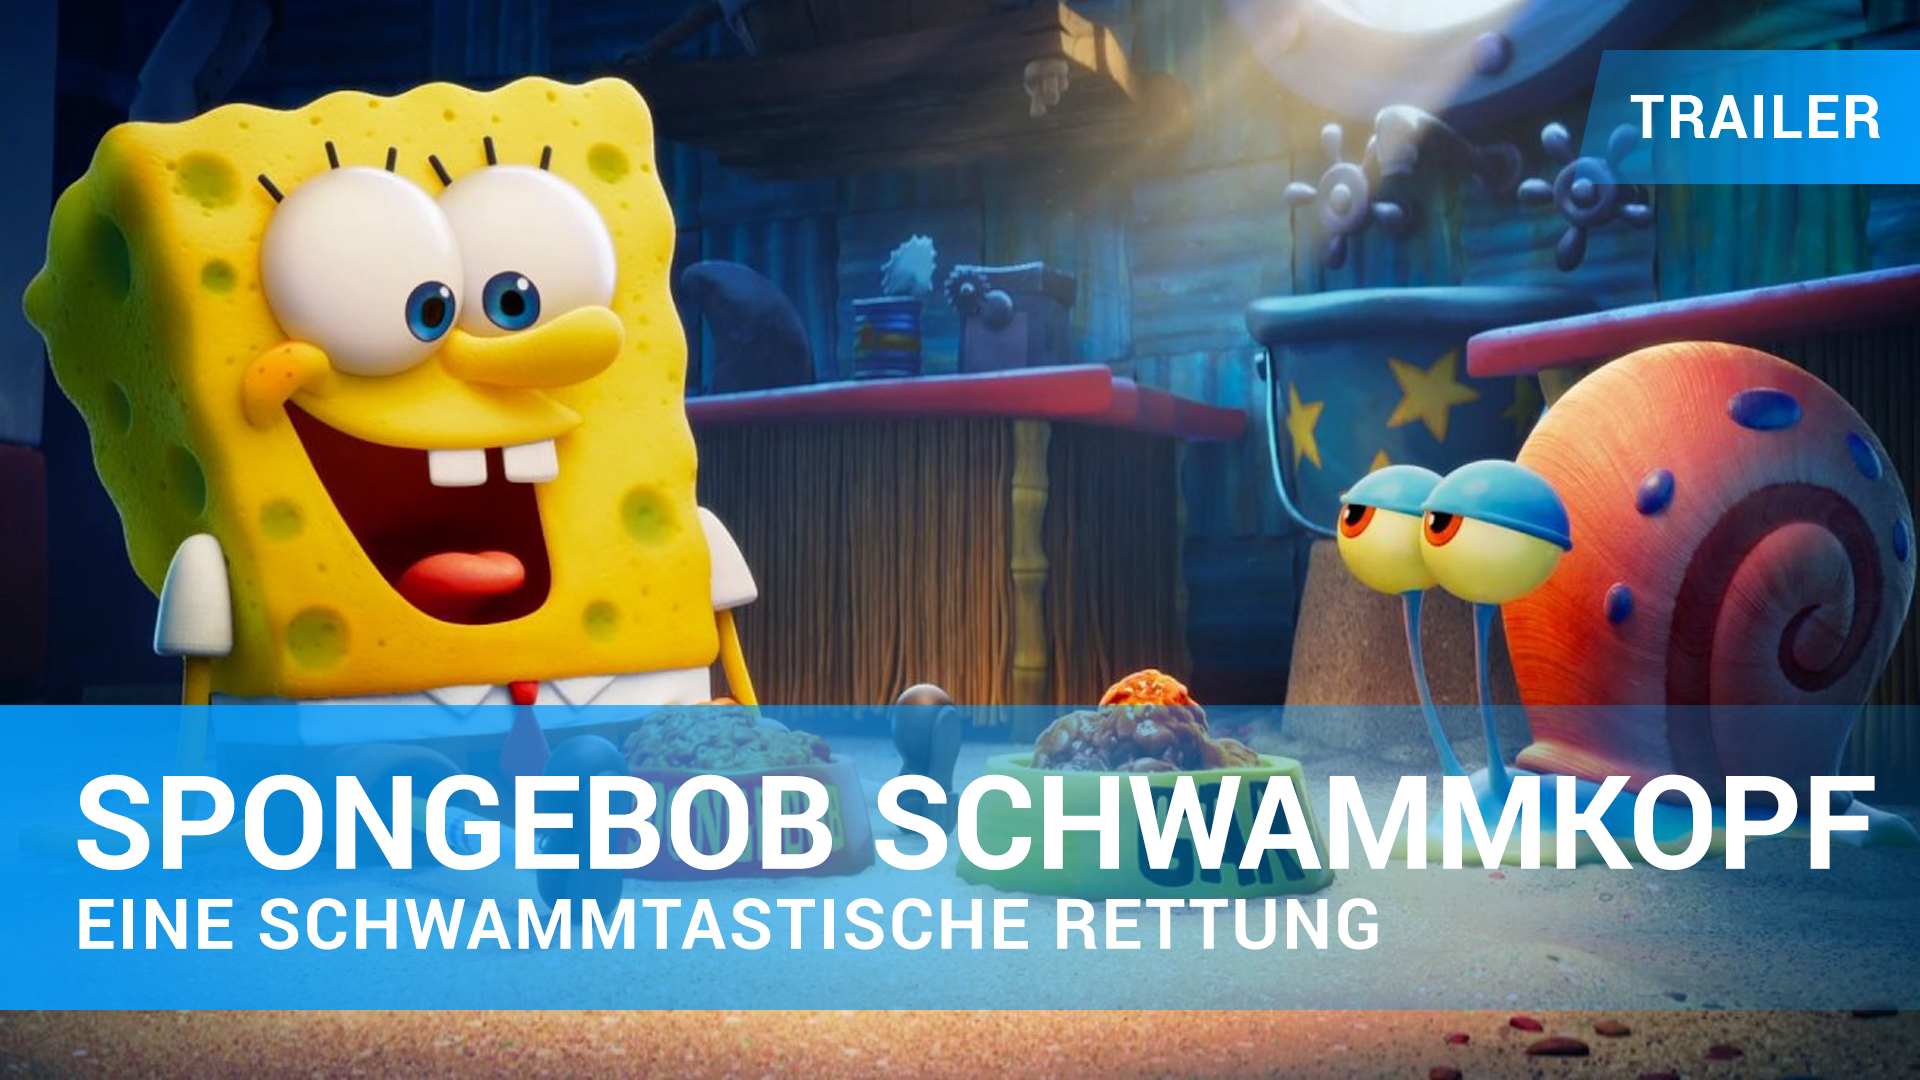 Spongebob Schwammkopf Eine Schwammtastische Rettung Film 2020 Trailer Kritik